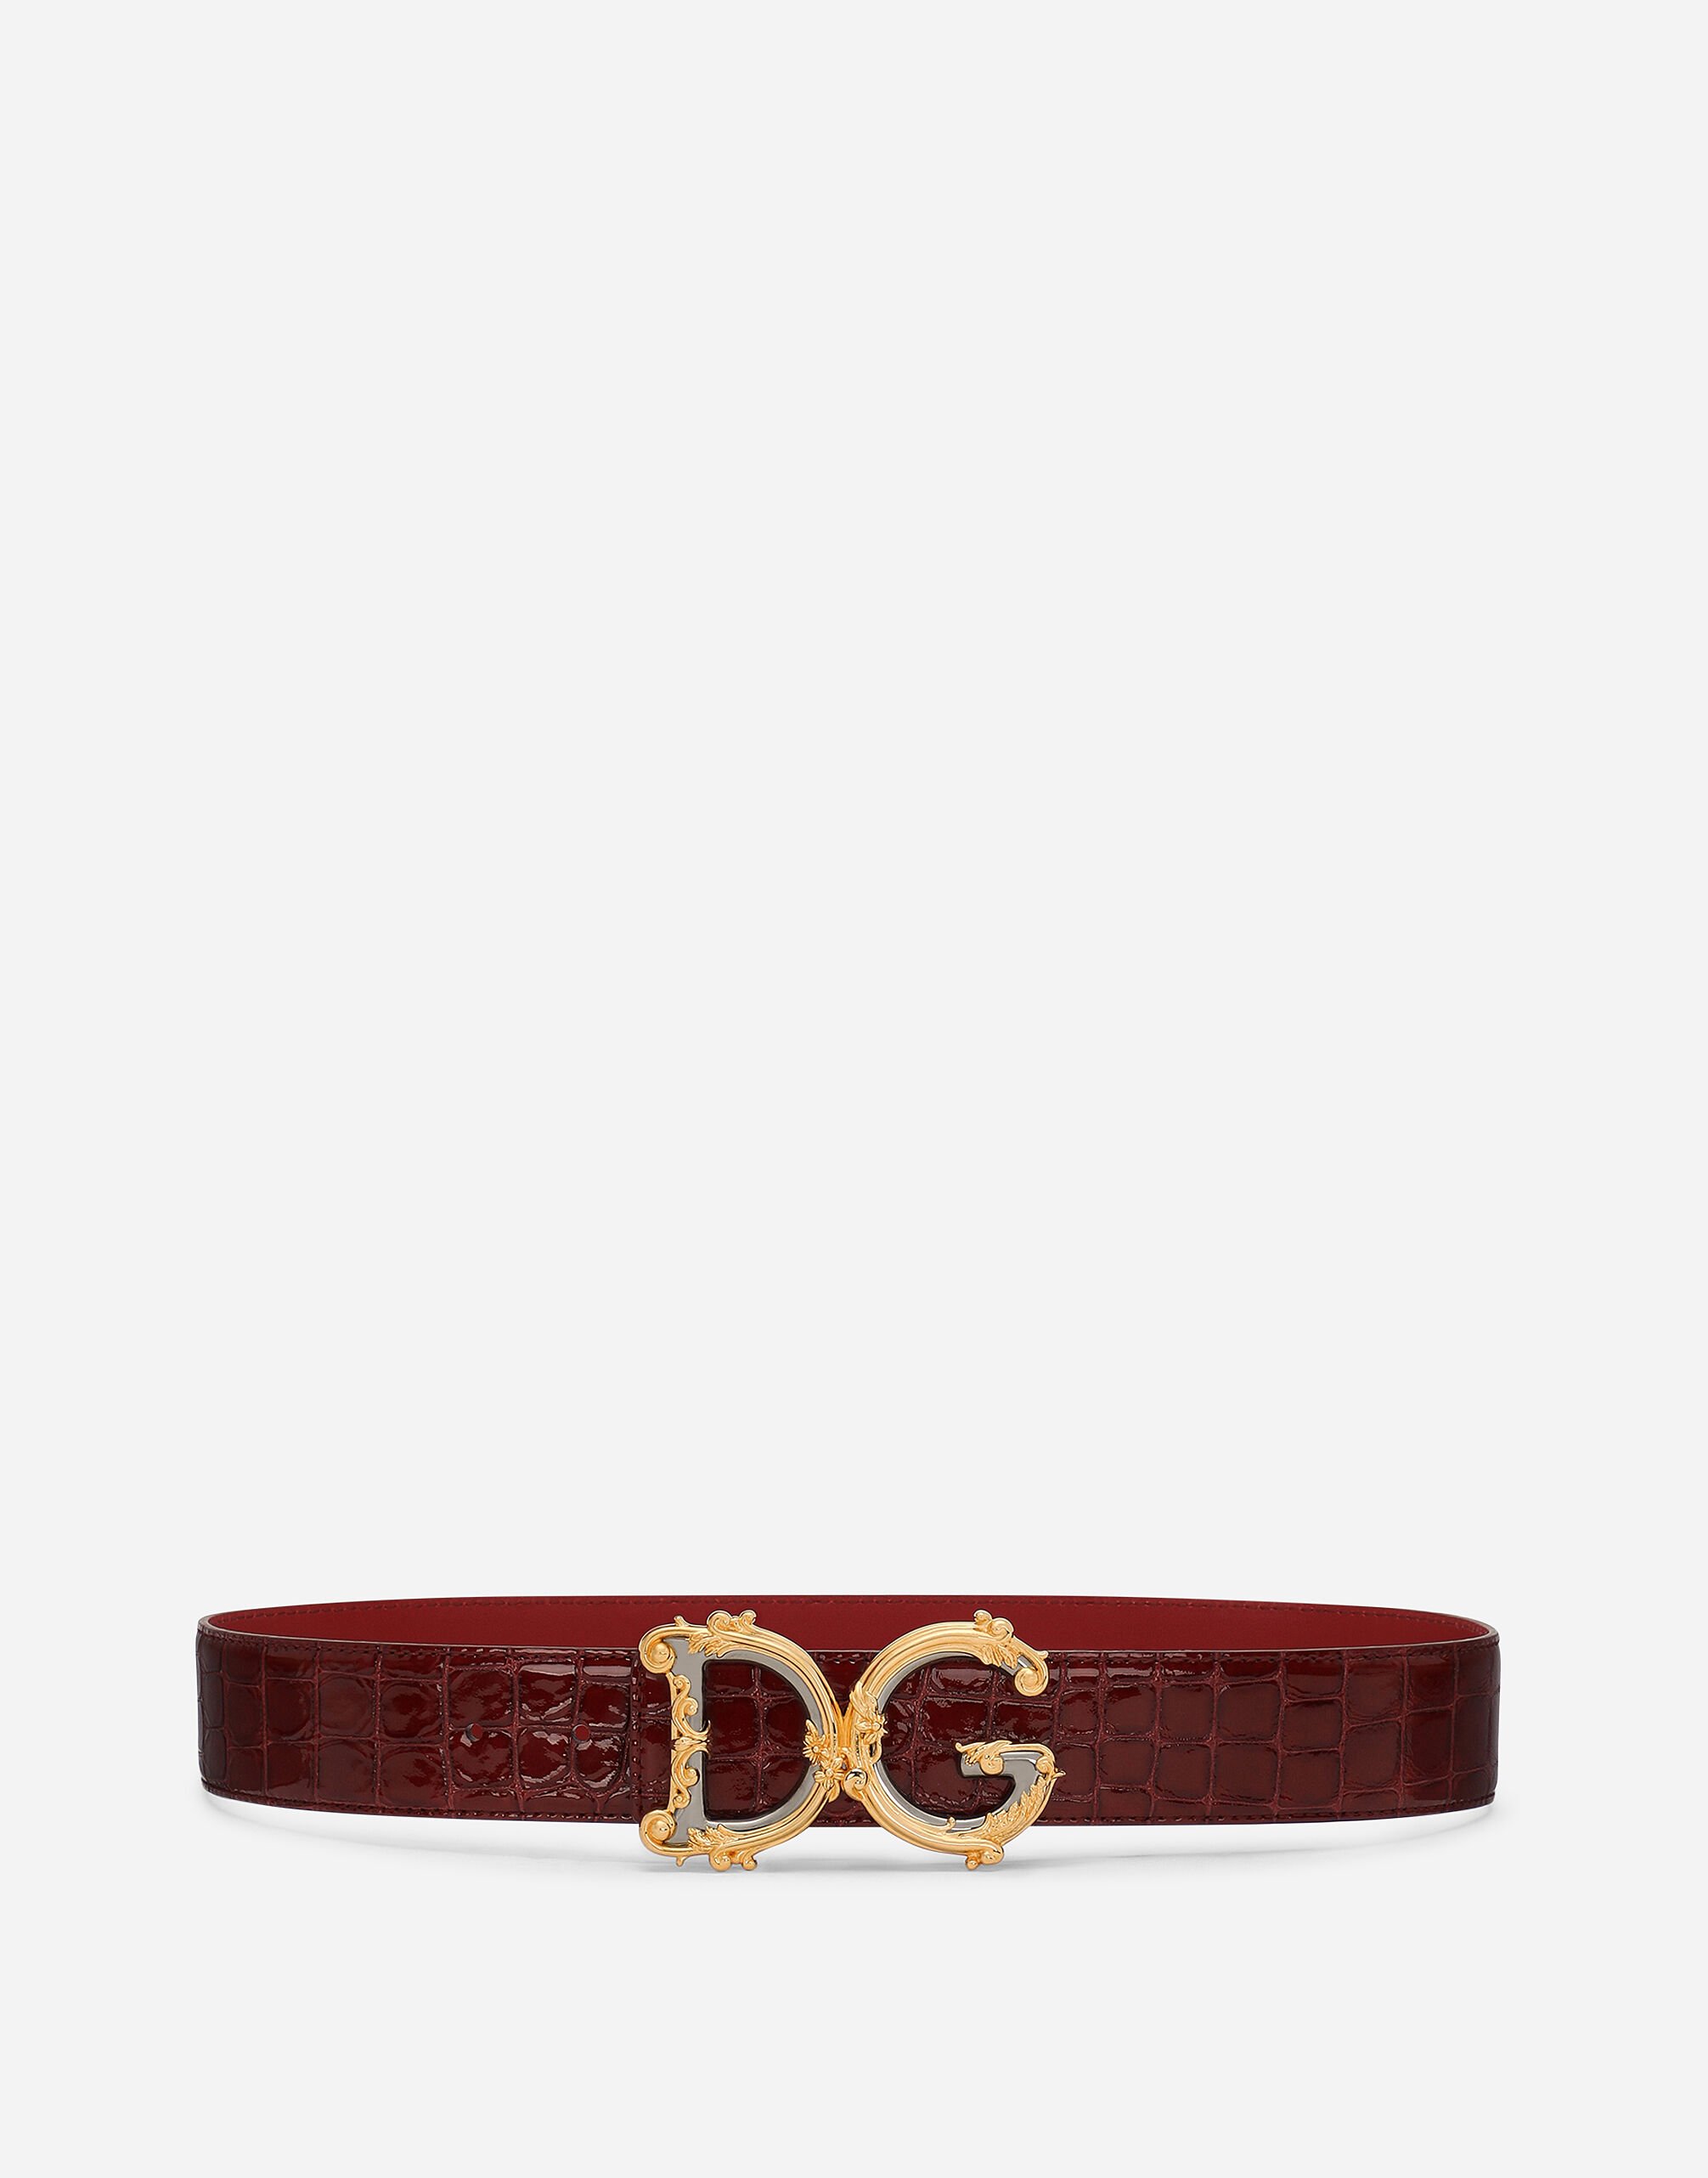 Dolce & Gabbana DG Girls belt Red FB311AGDK16